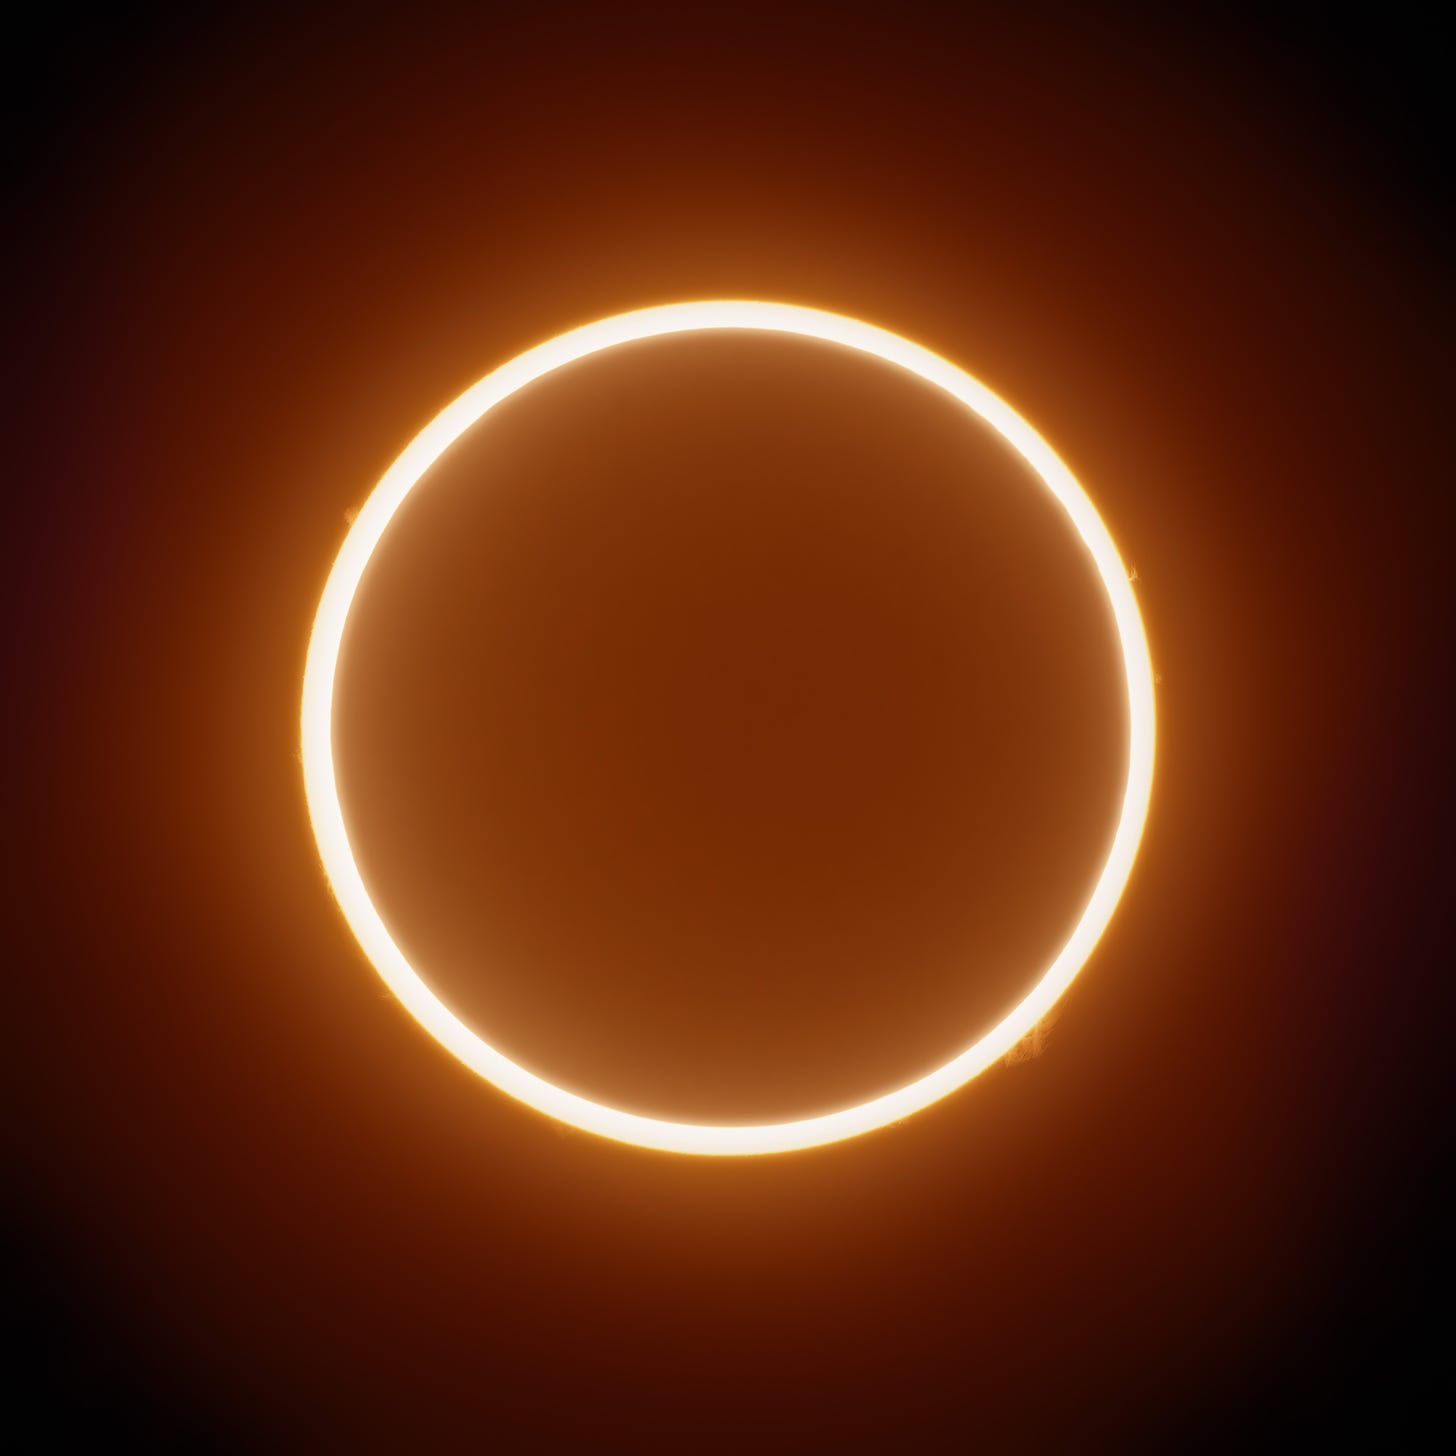 Imagen del eclipse tomada por Andrew McCarthy